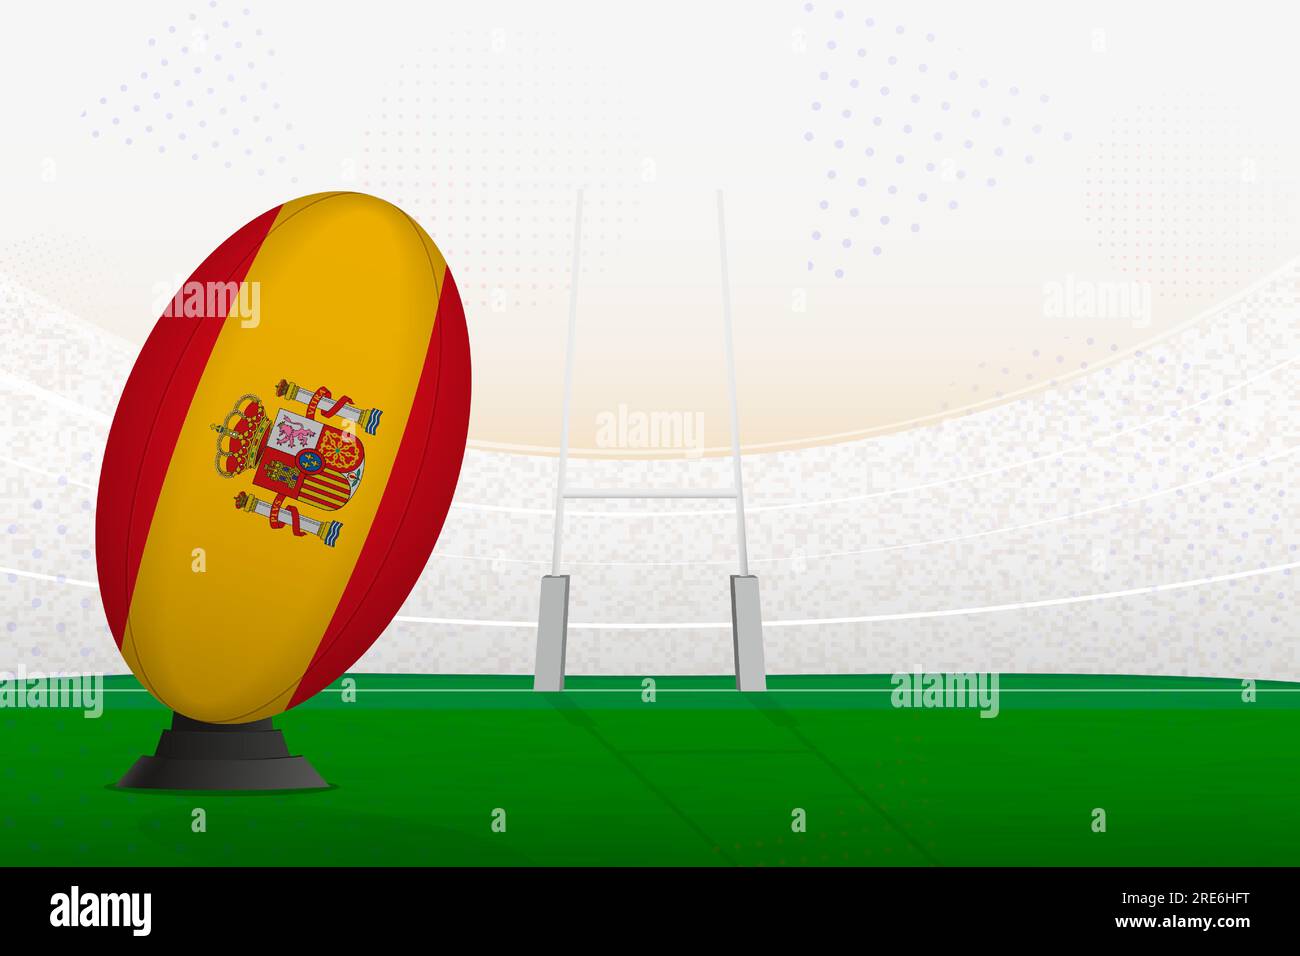 Ballon de rugby de l'équipe nationale d'Espagne sur le stade de rugby et les poteaux de but, se préparant à un penalty ou coup franc. Illustration vectorielle. Illustration de Vecteur